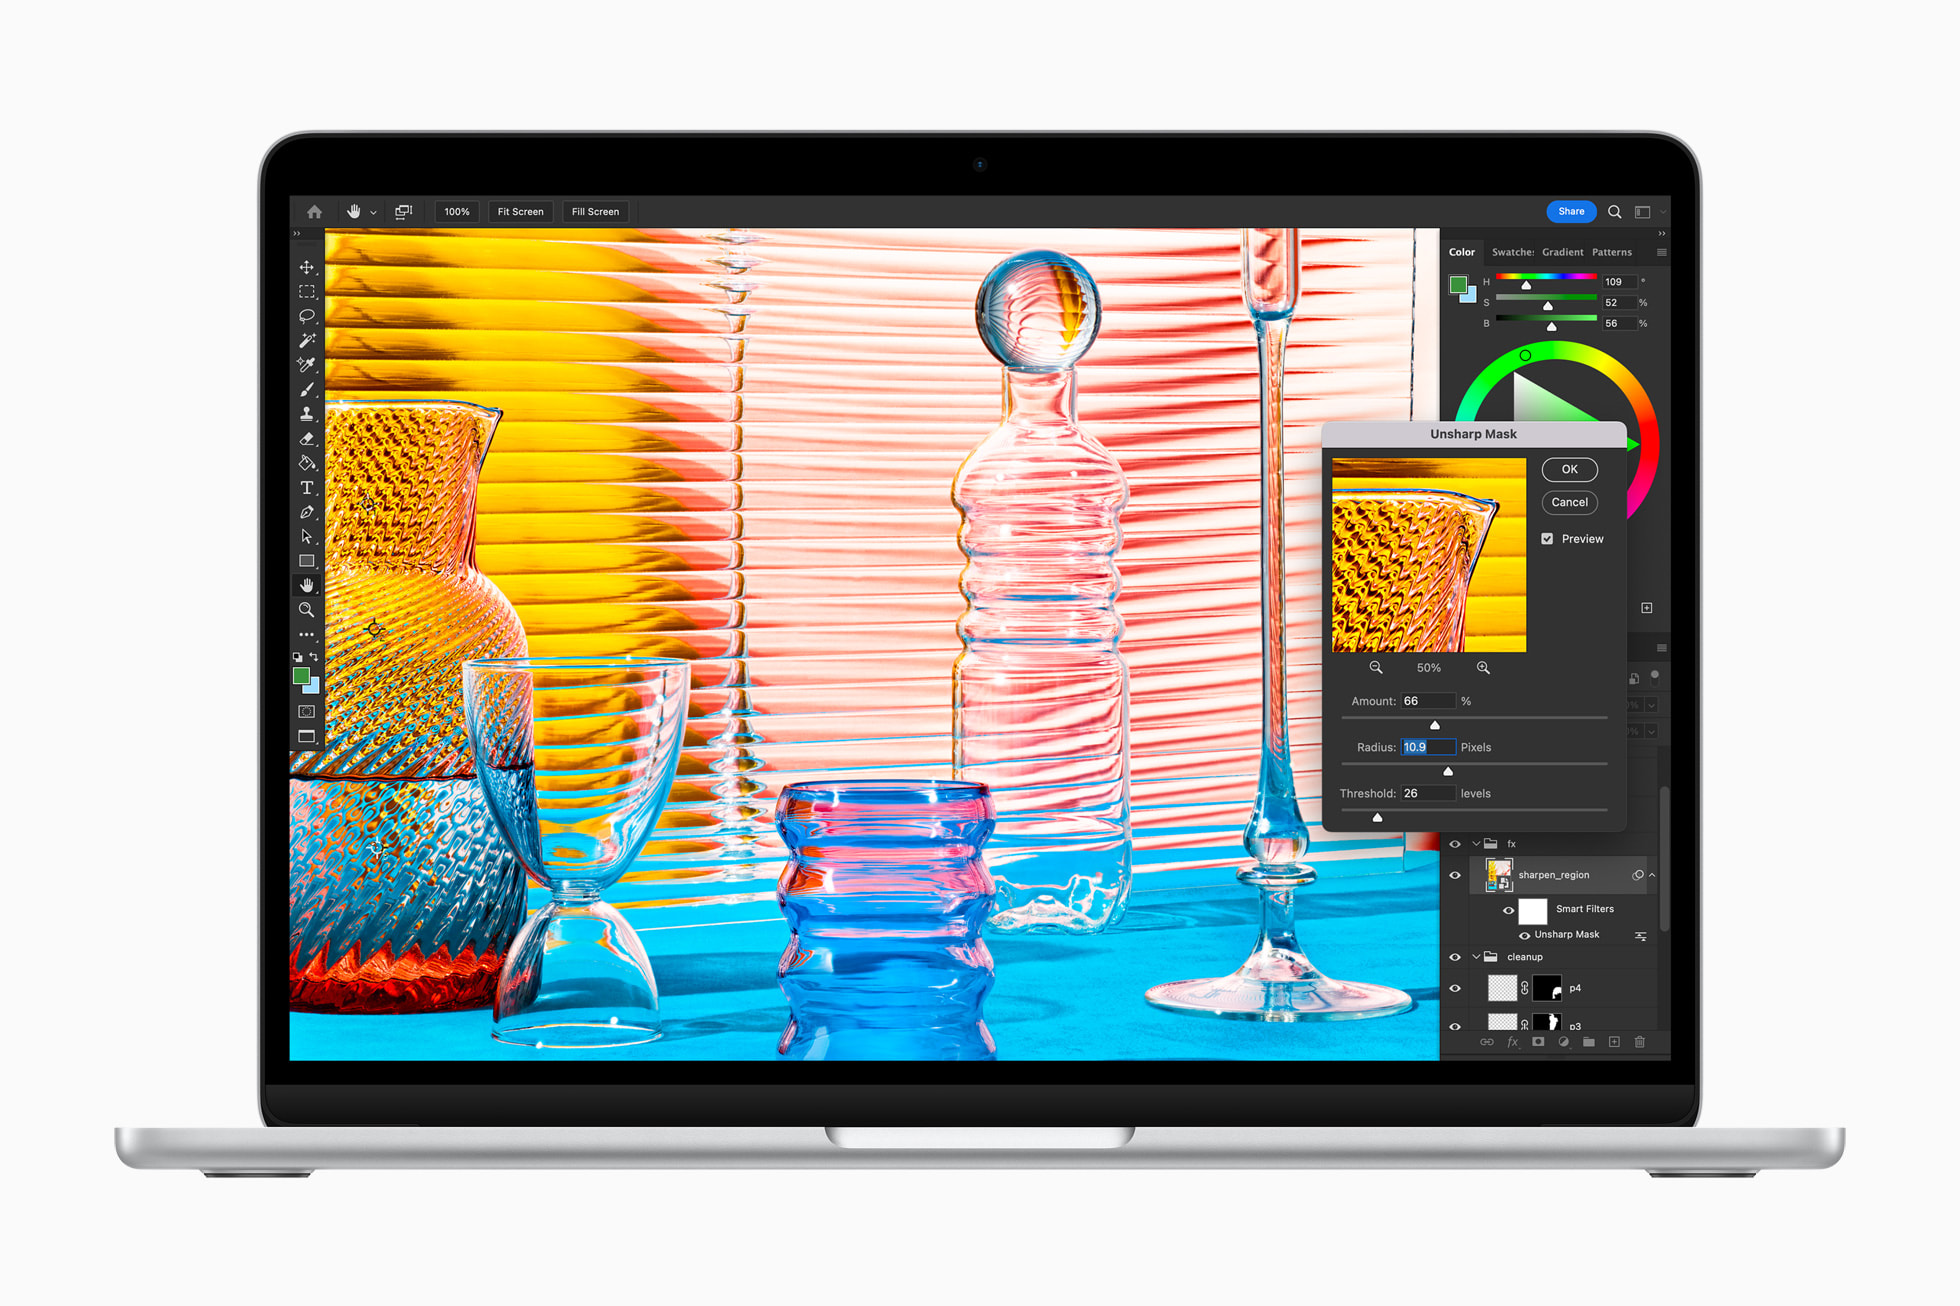 Επεξεργασία μιας εικόνας στο Adobe Photoshop στο MacBook Air στο Silver